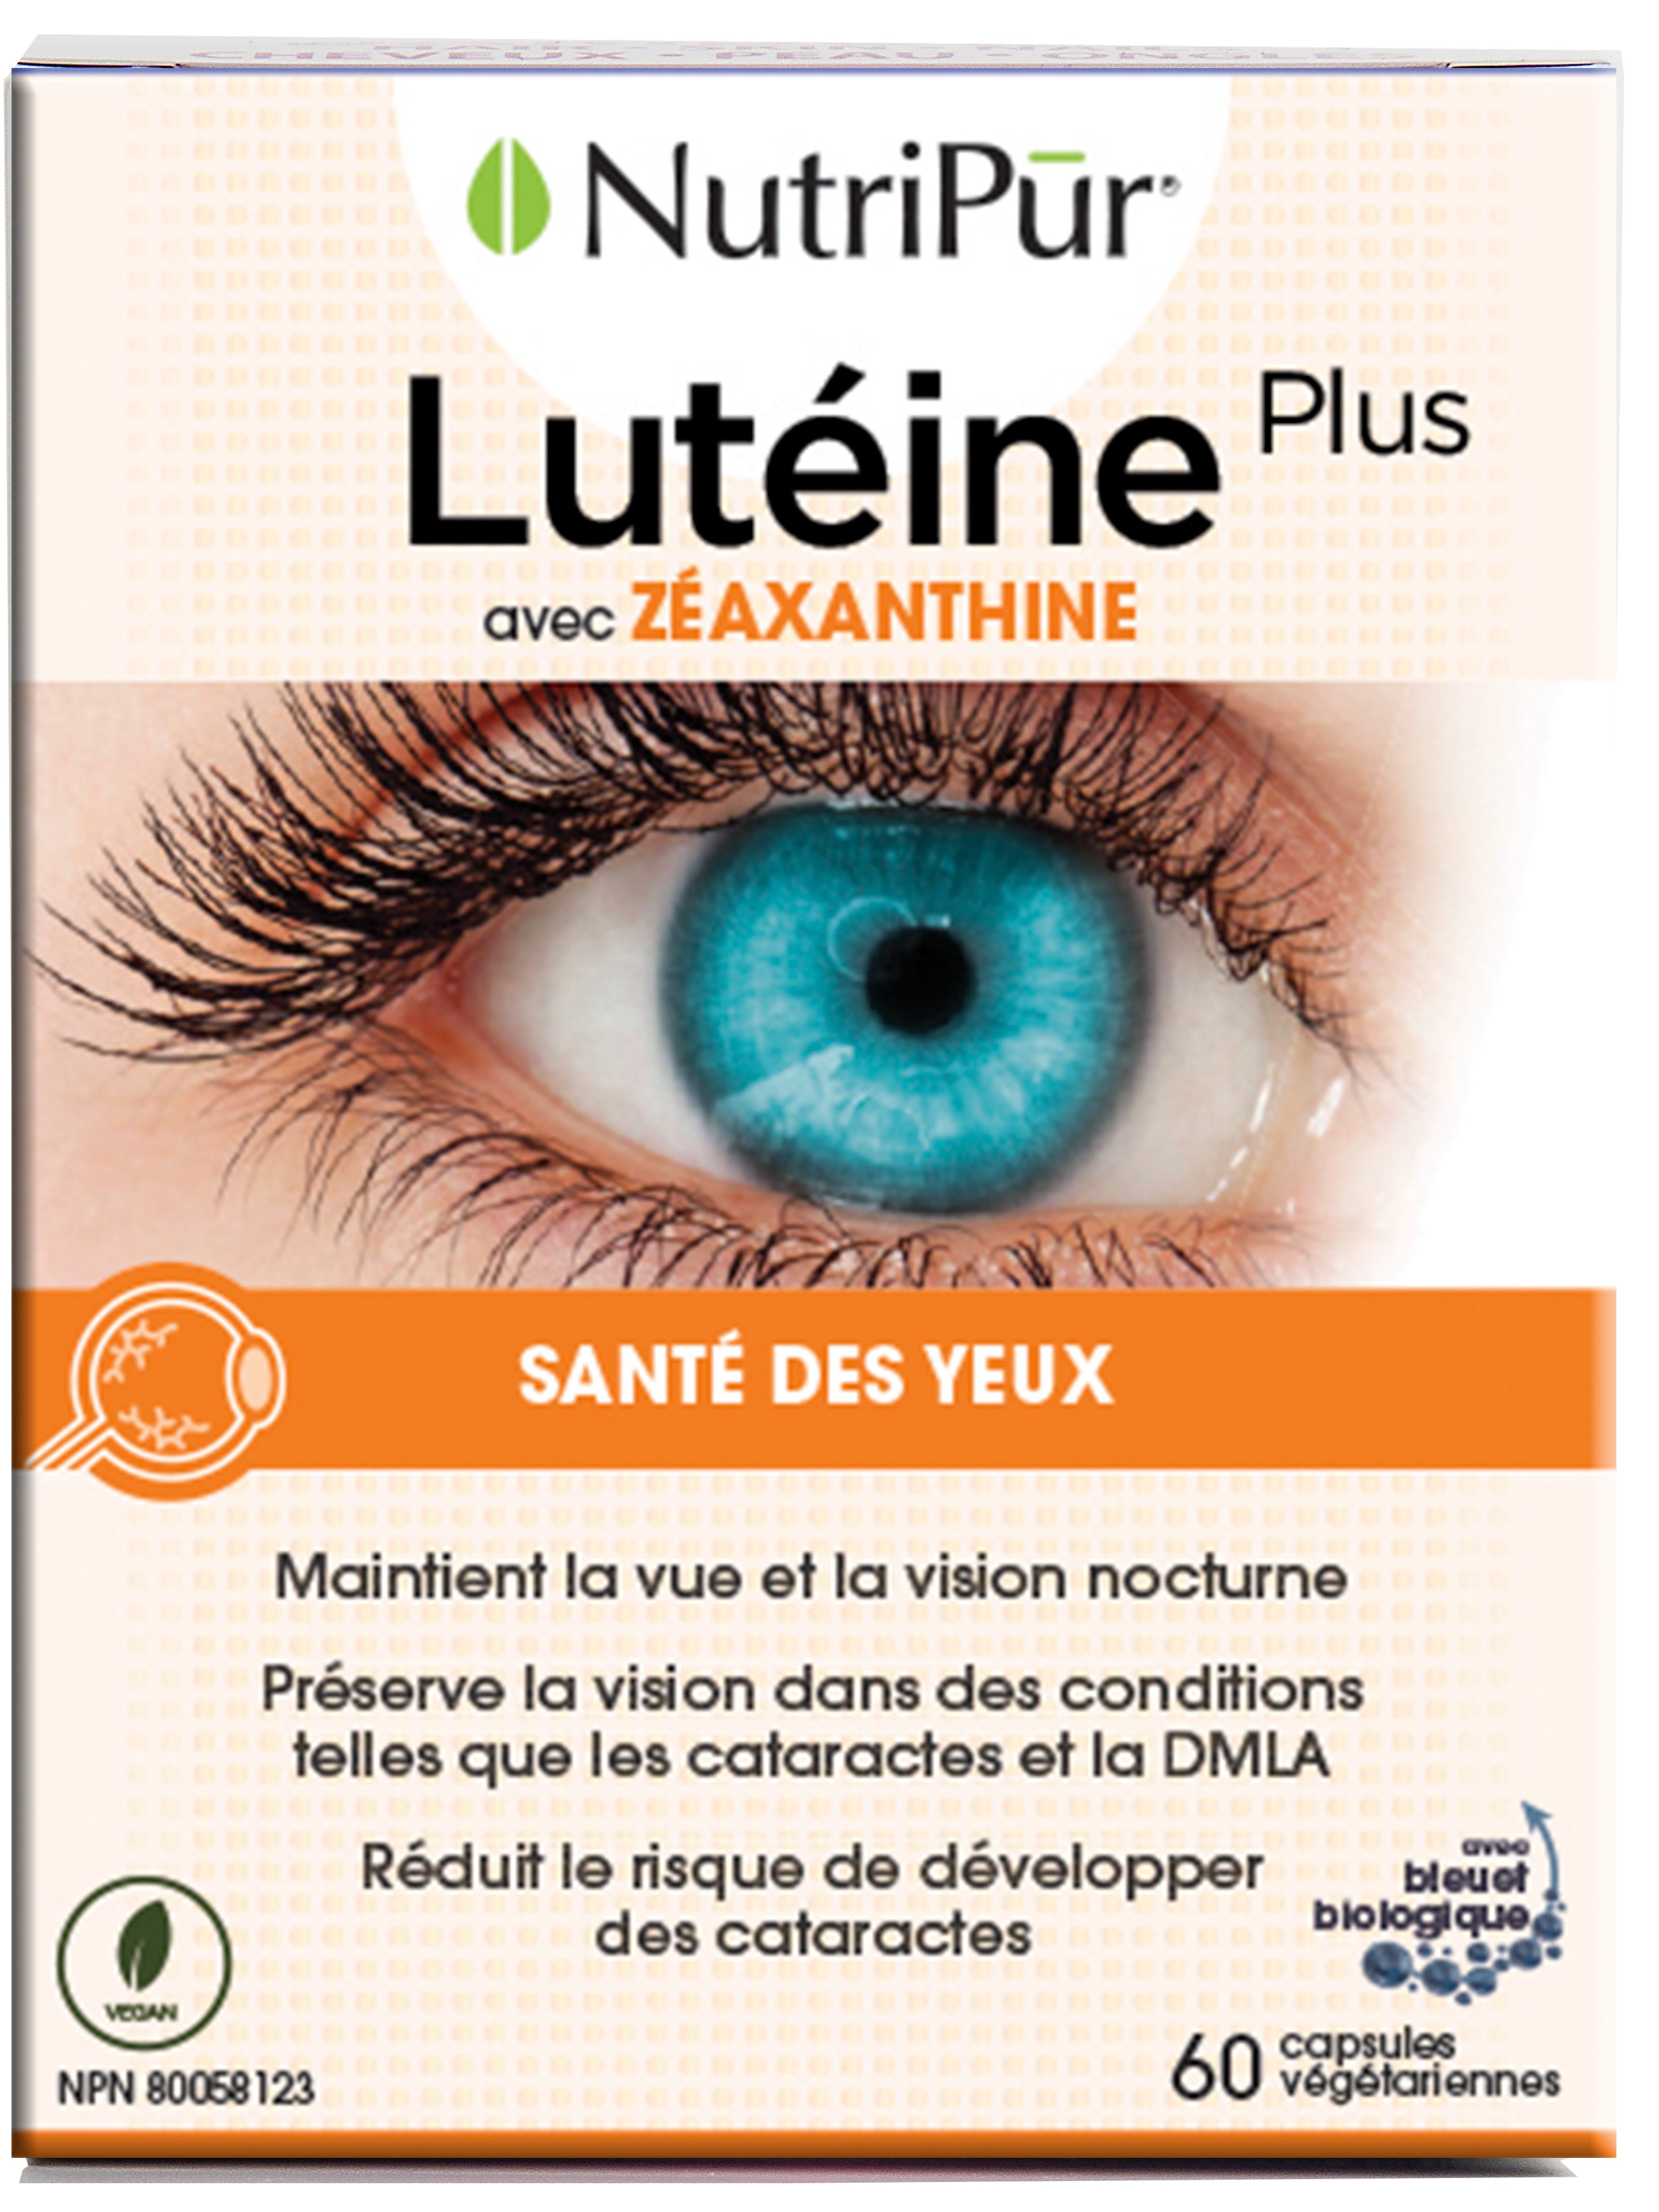 Lutein plus - Nutripur - avec Zeaxanthine - santé des yeux - vue - vision nocturne - cataracts - DMLA 